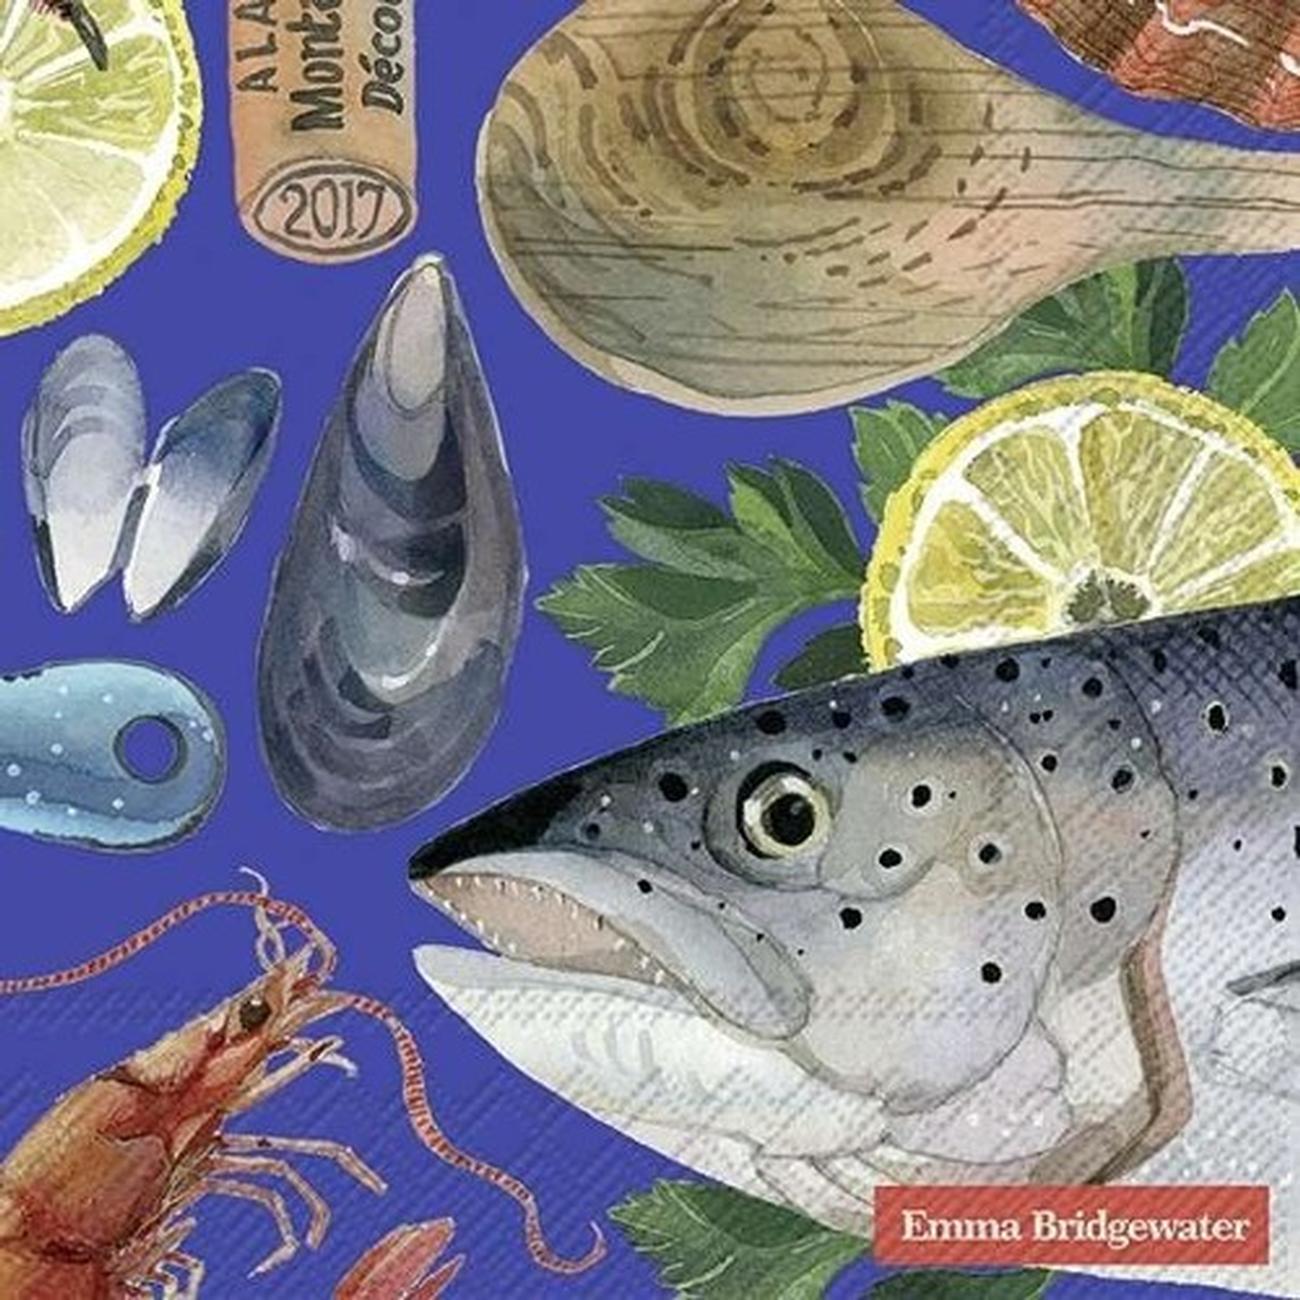 ihr-fish-supper-em-blue-napkins - IHR Lunch Napkins Emma Bridgewater Fish Supper Blue